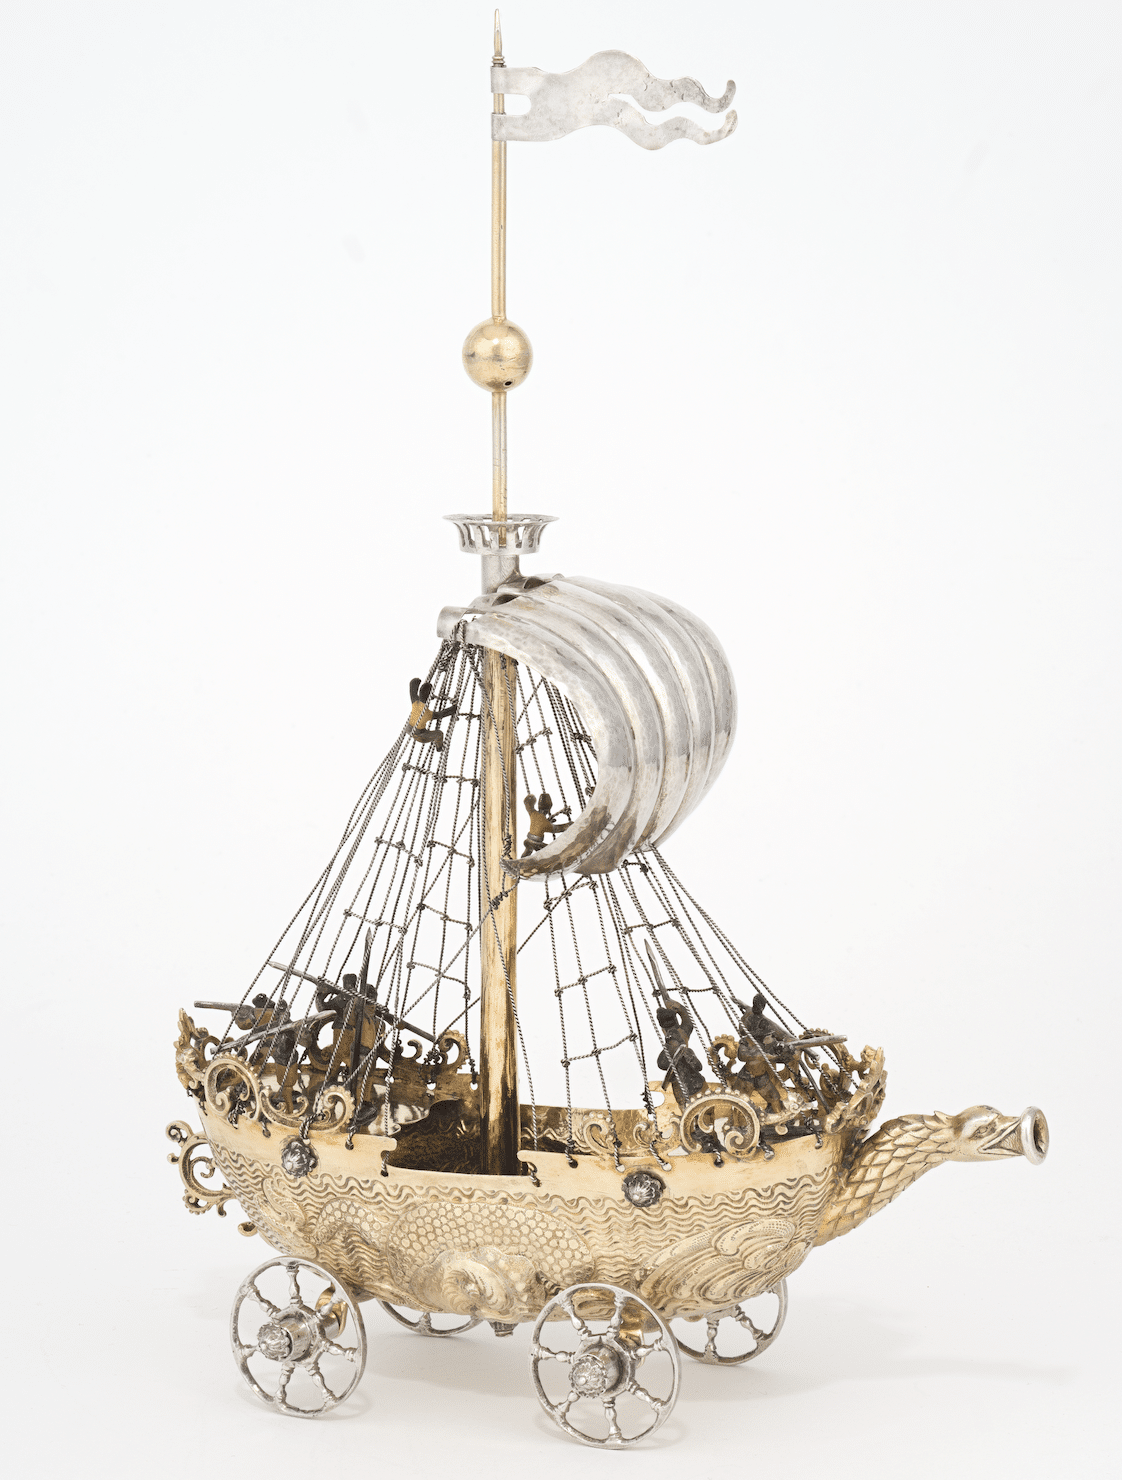 Trinkschiff auf Rädern, Georg Müllner, Nürnberg, 1625−1629, Privatsammlung Basel, D13, © Historisches Museum Basel, Foto: Andreas Niemz